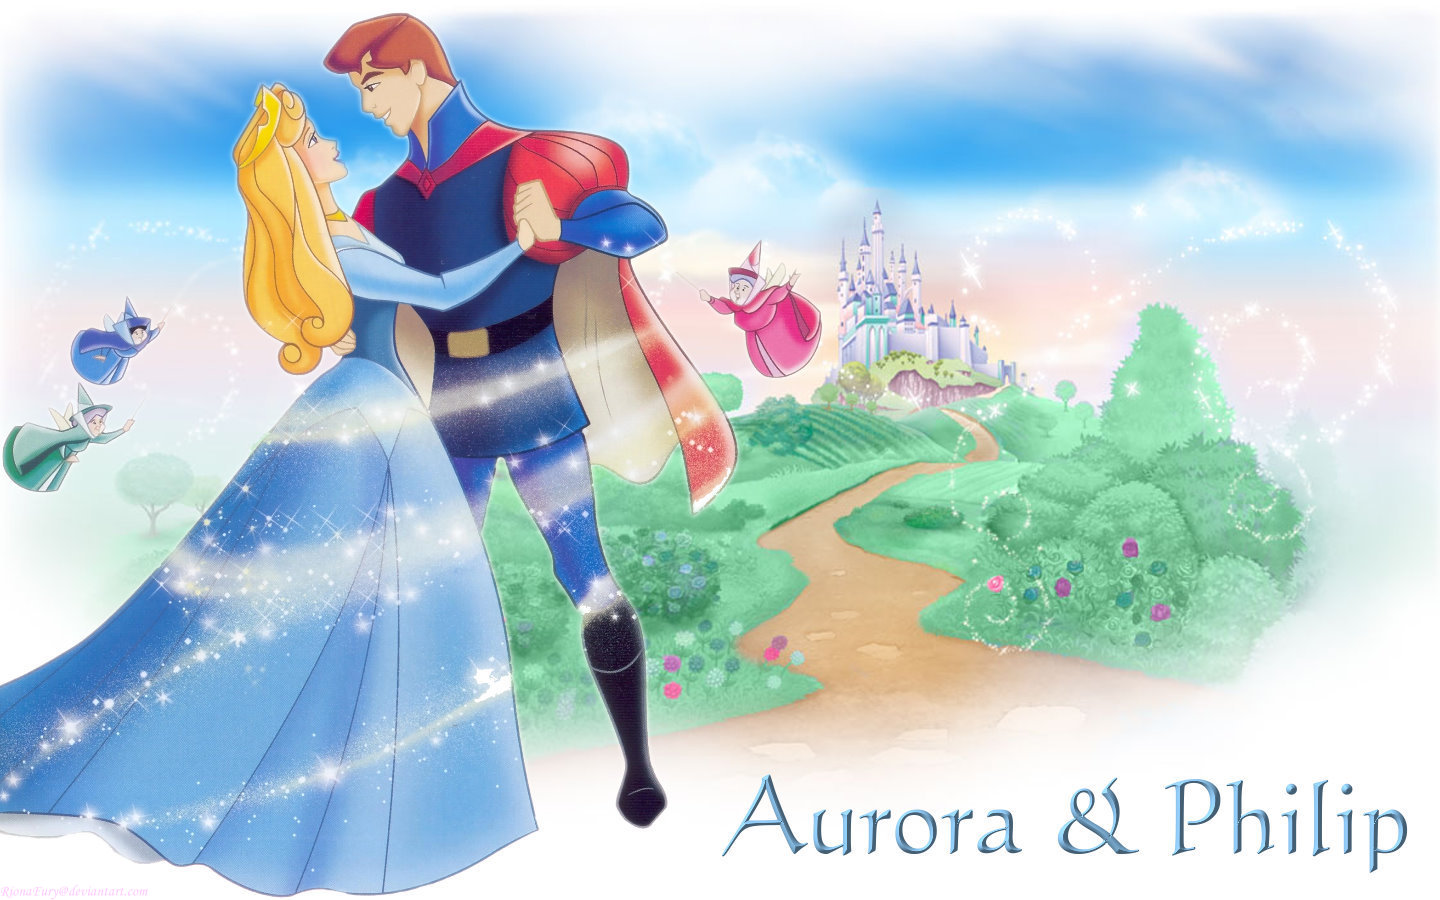 Aurora and Philip